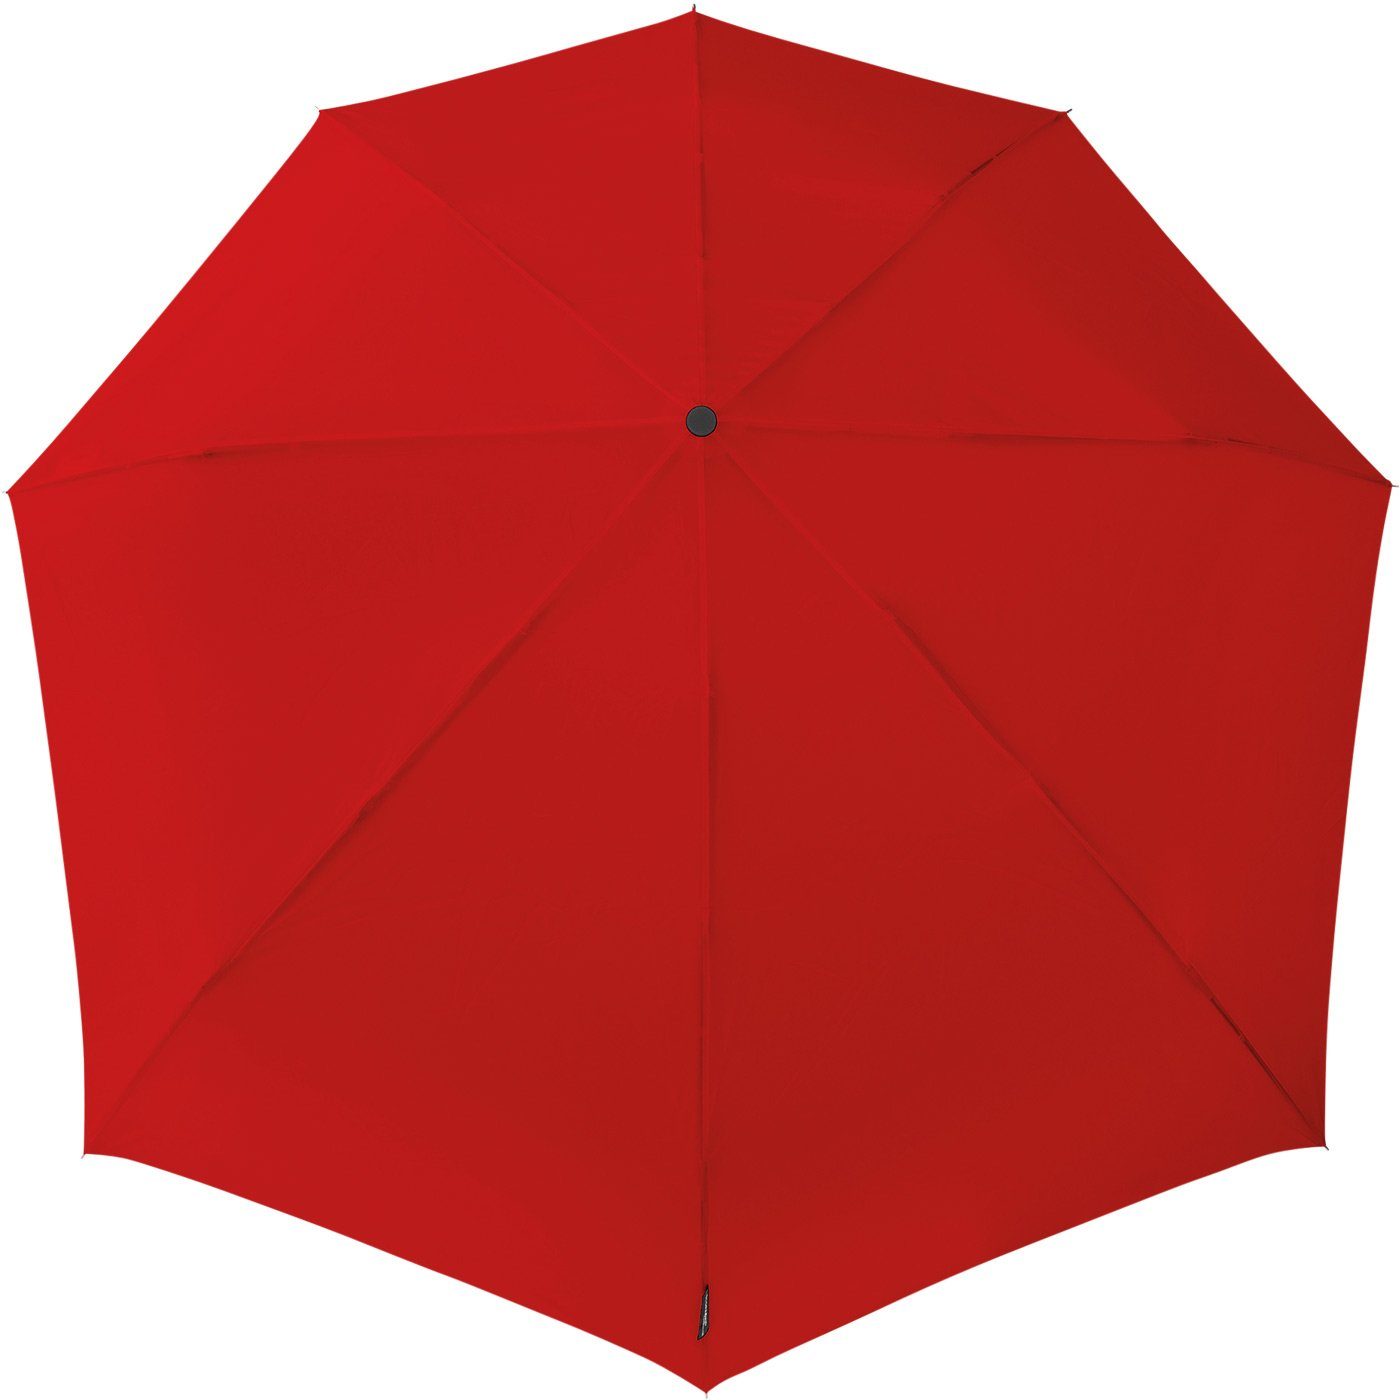 zu rot besondere Impliva durch km/h Taschenregenschirm hält den 80 aerodynamischer der bis in STORMini Sturmschirm, dreht aus Form Schirm seine sich Wind,